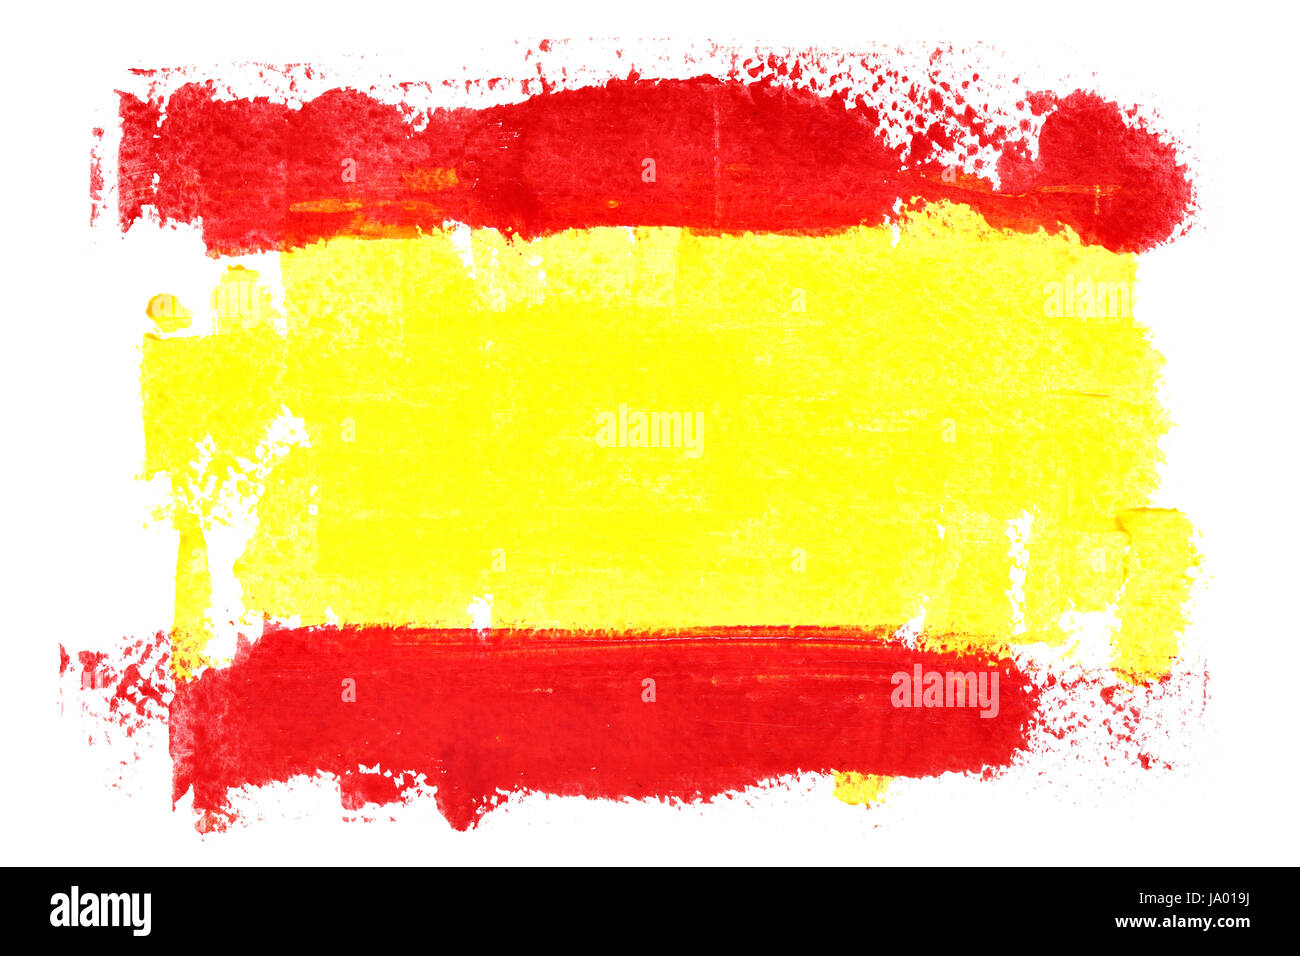 Spanische Flagge von Pinselstrichen auf dem weißen Hintergrund isoliert  Stockfotografie - Alamy